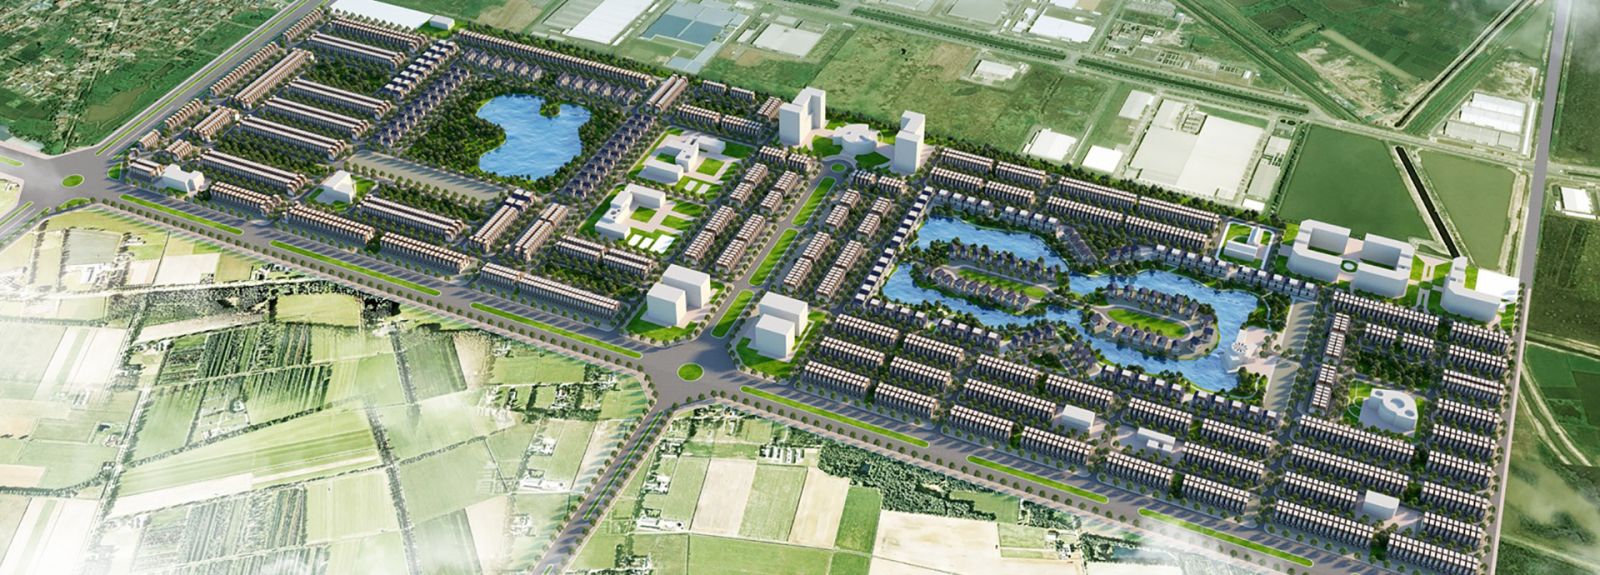 Phối cảnh dự án Khu đô thị V - Green City Phố Nối do Công ty Cổ phần Thăng Long làm chủ đầu tư.